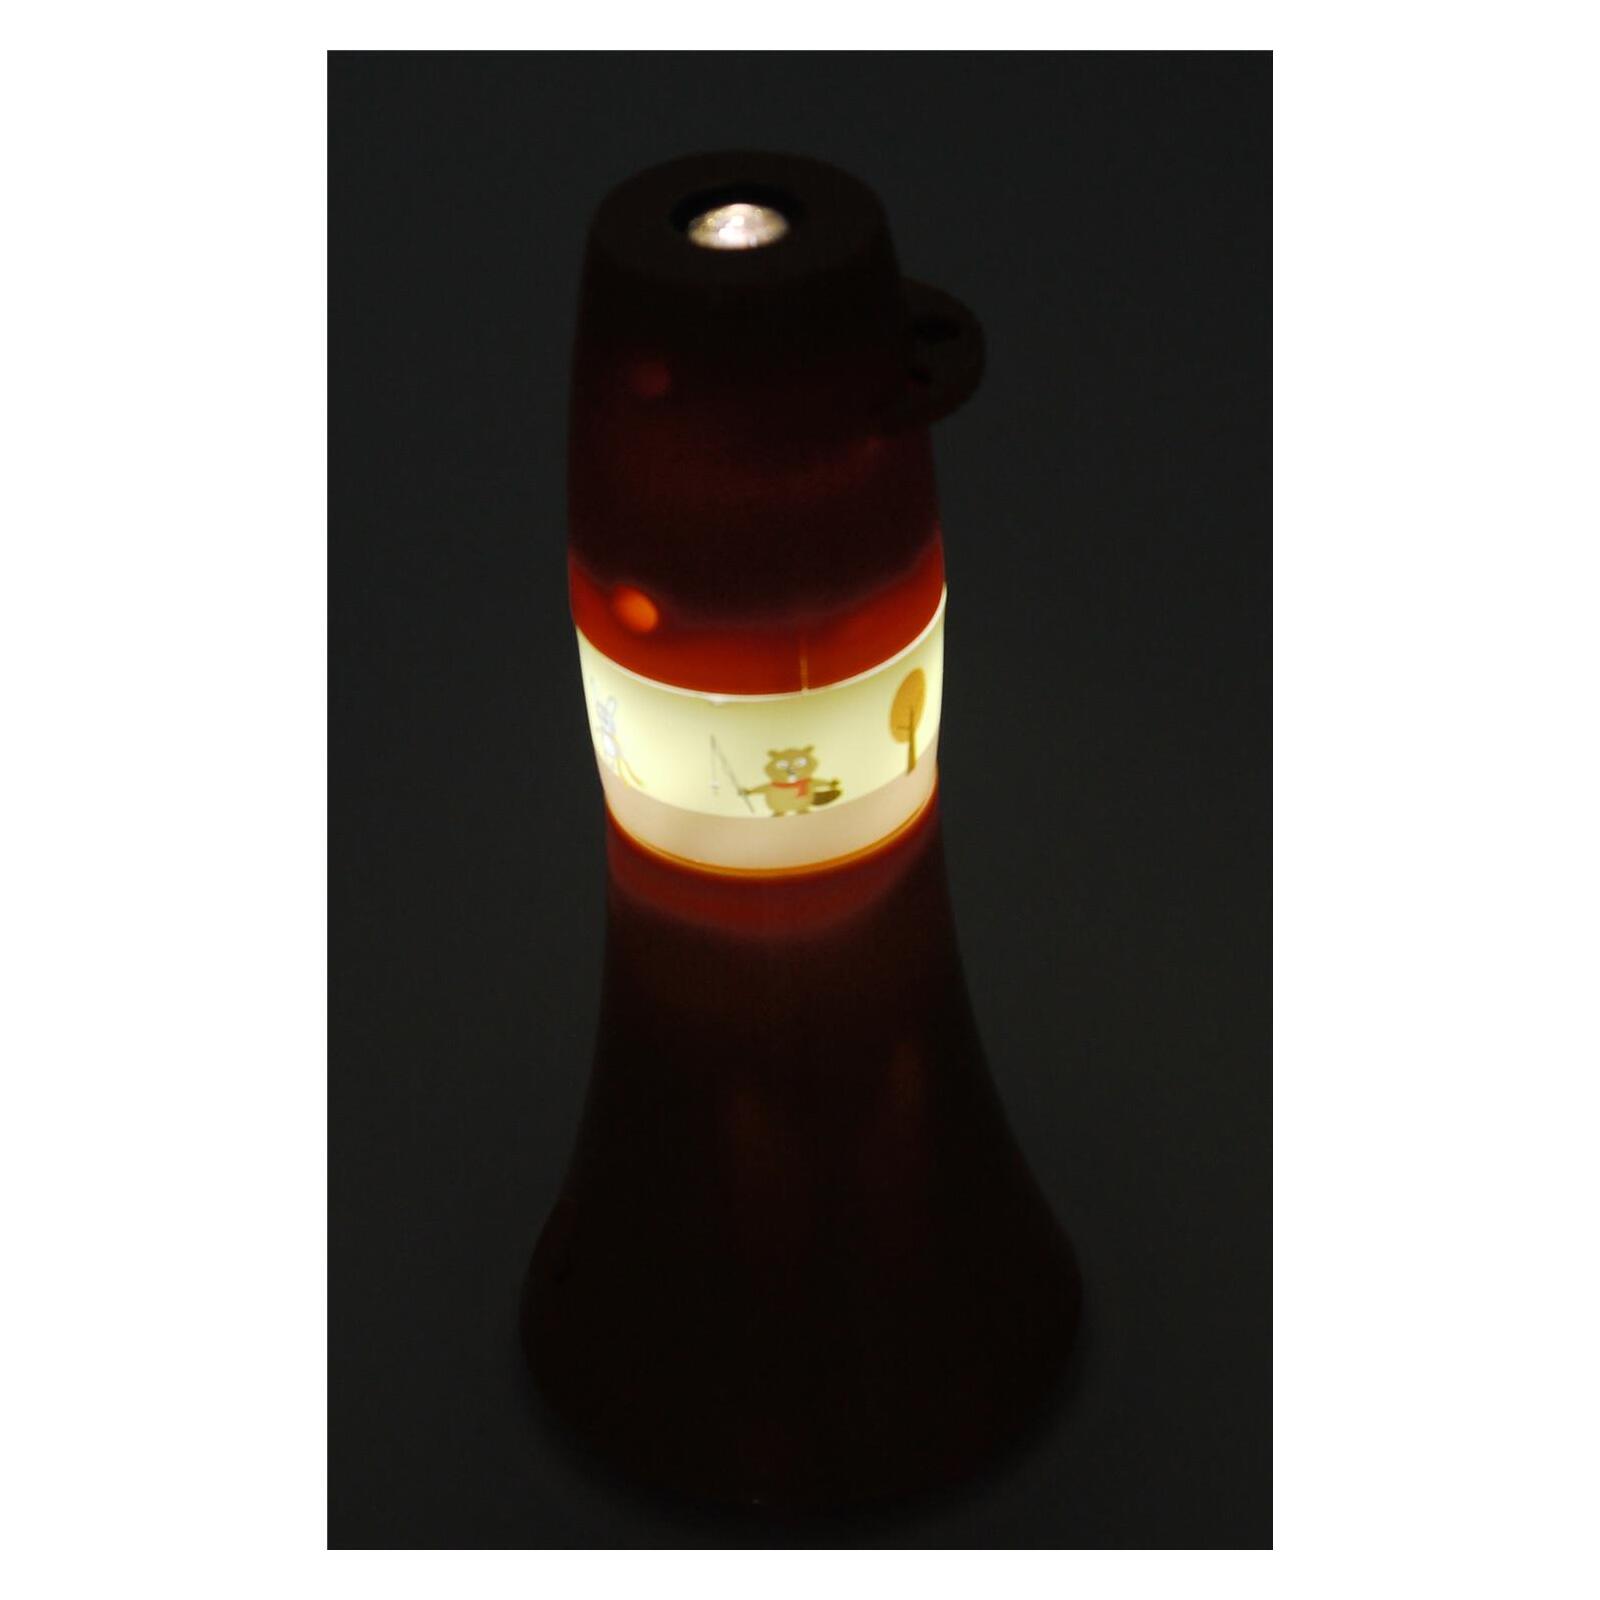 Taschen-Projektor Waldtiere, 6 fach Lampen Leuchten & Onlineshop 